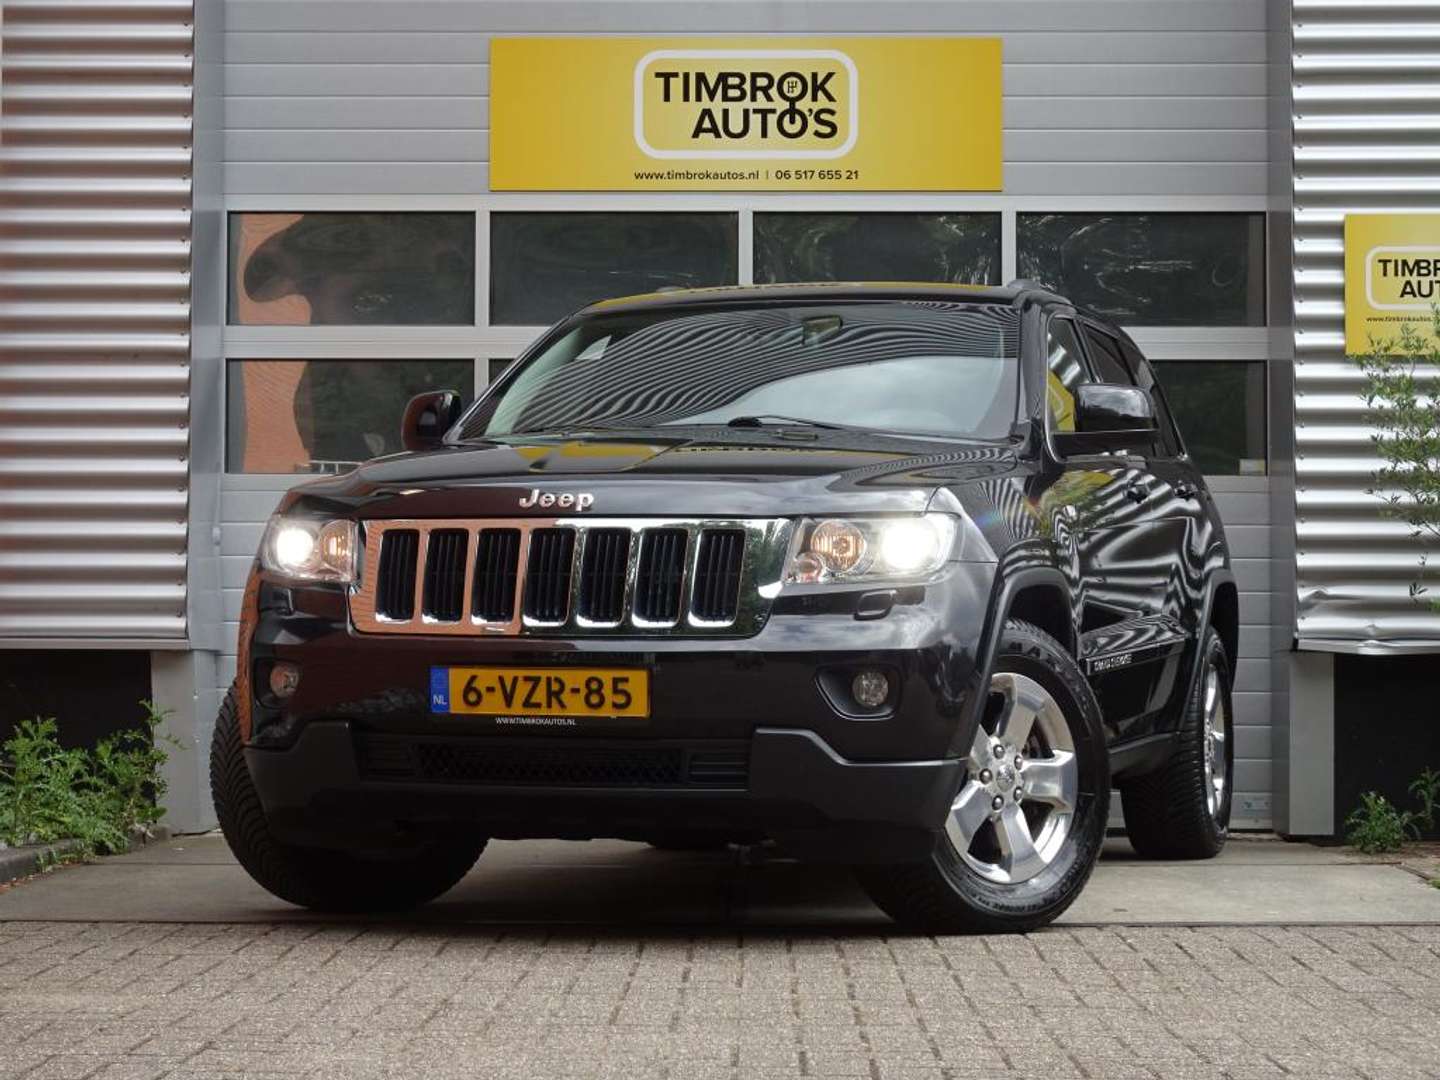 rand niets woestenij Jeep Grand Cherokee Bedrijfswagen in Zwart gebruikt in Delden voor €  22.688,-